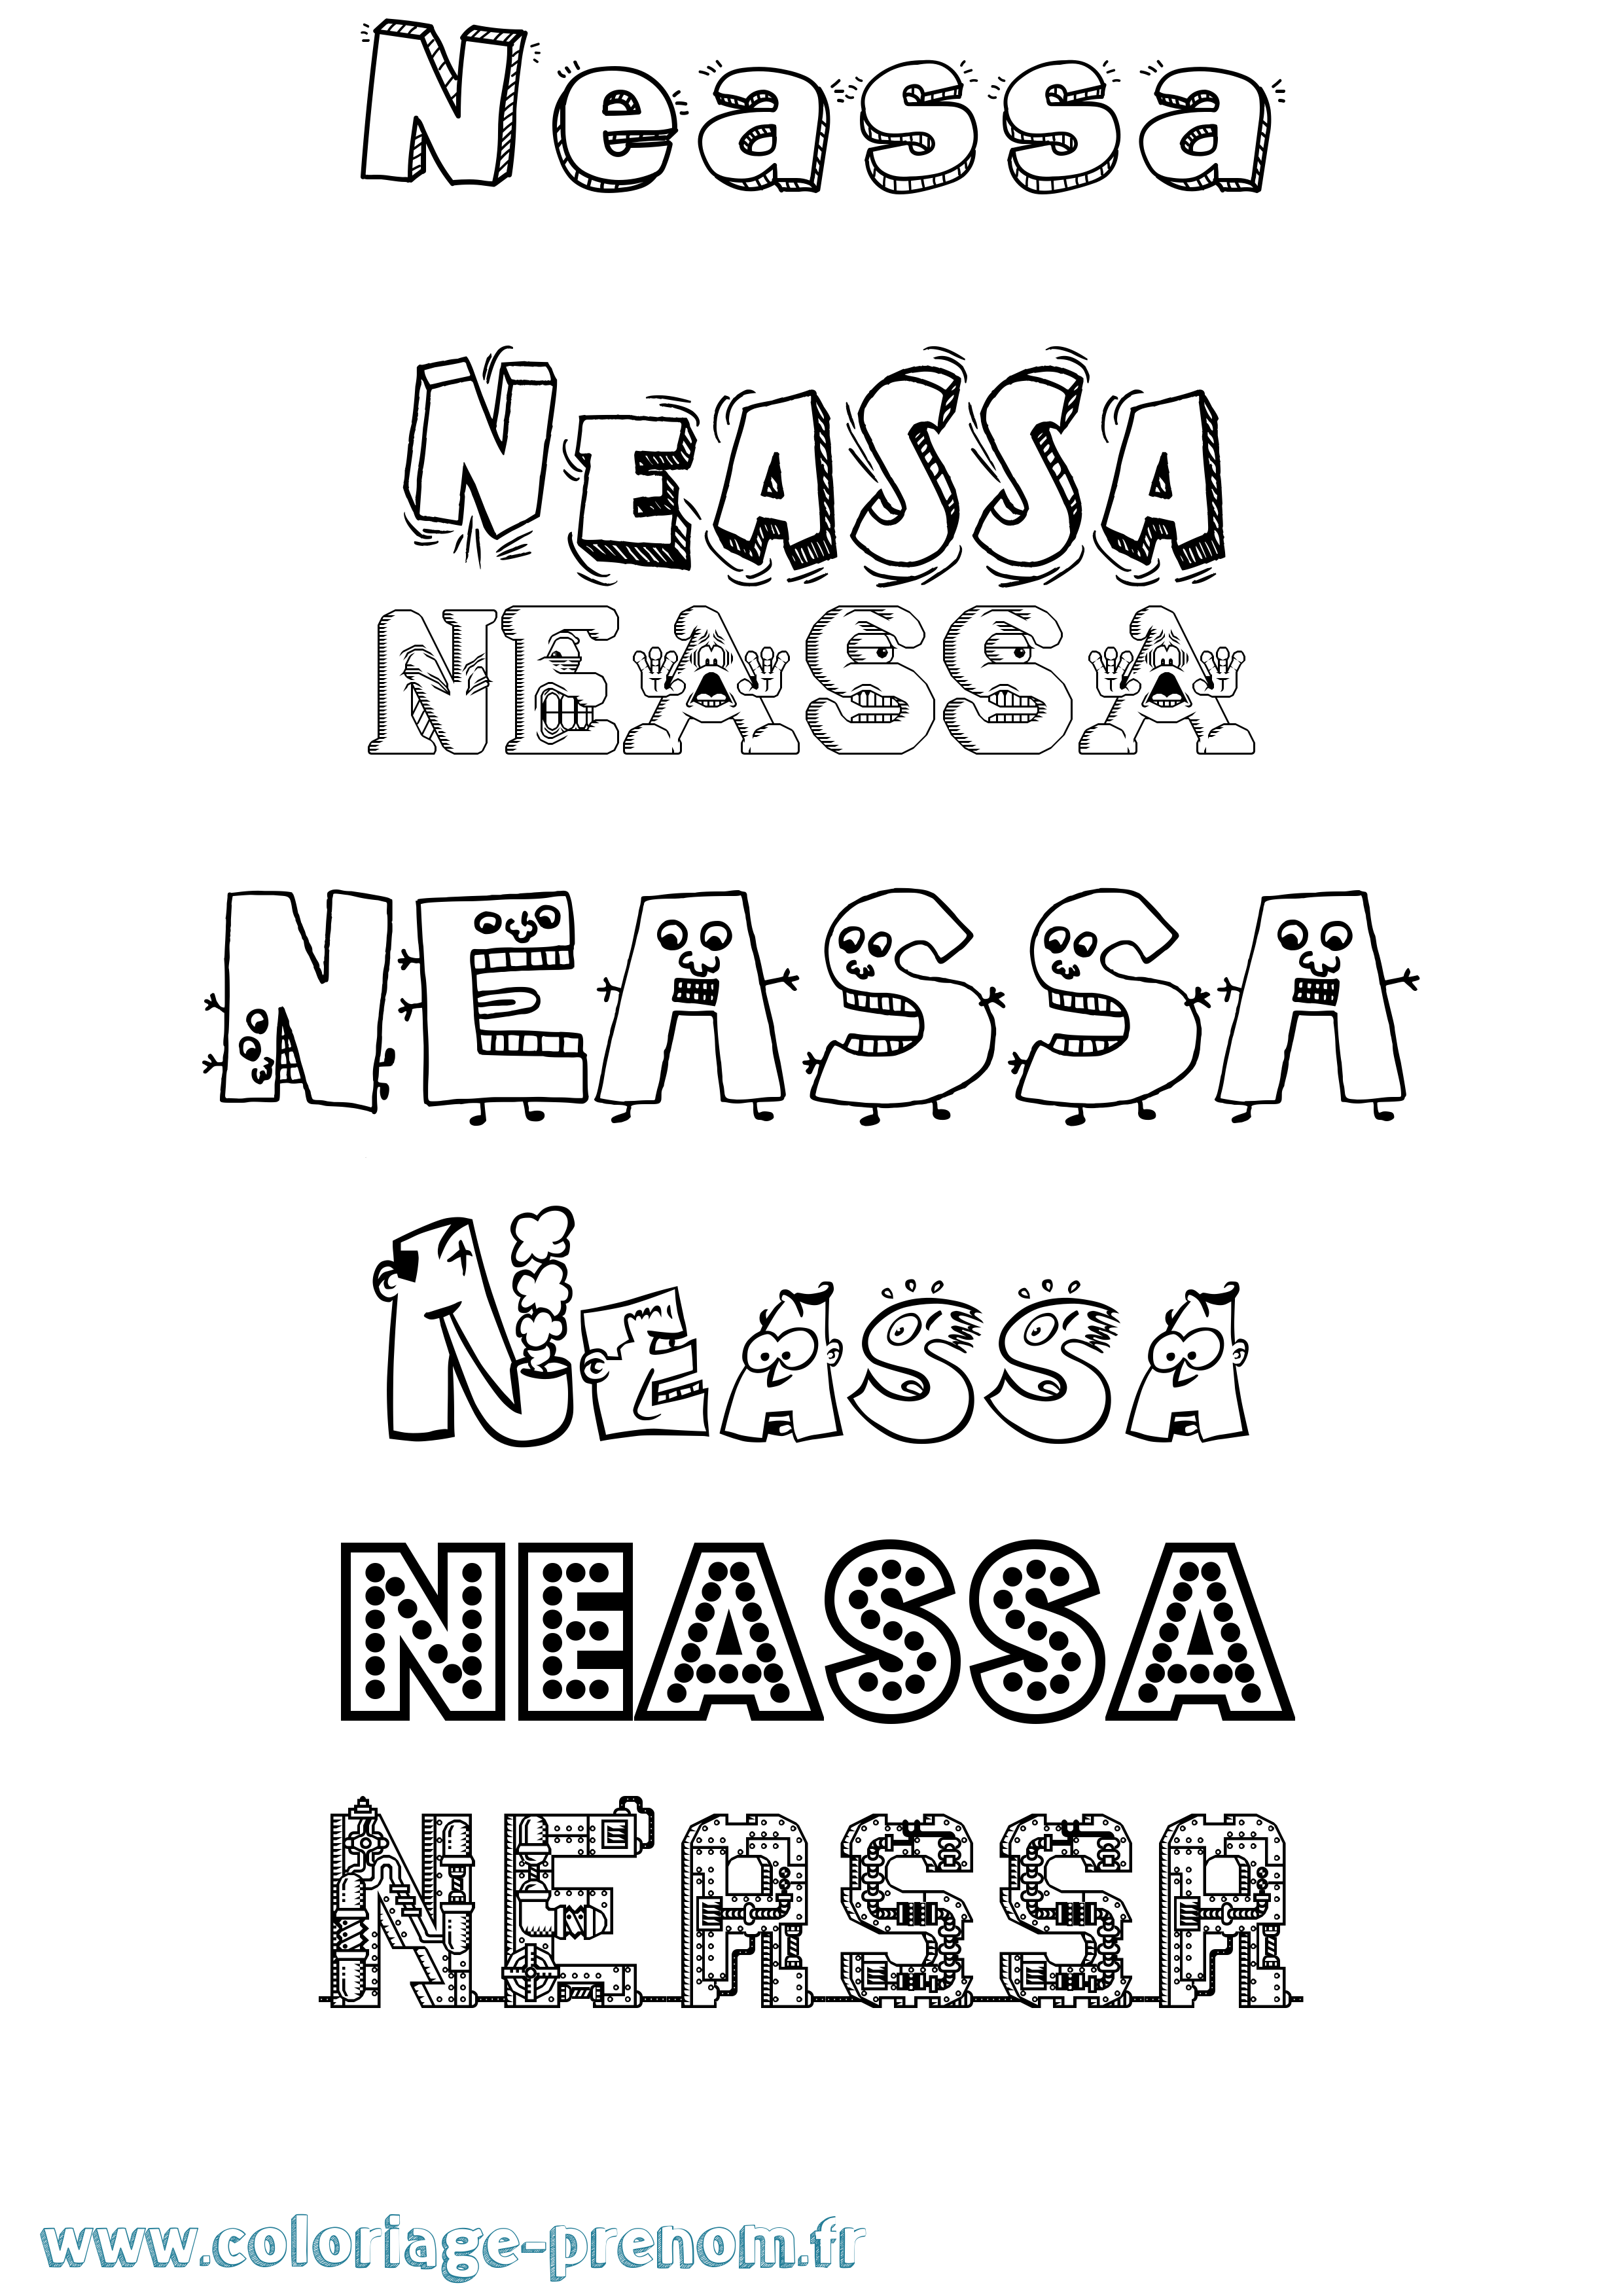 Coloriage prénom Neassa Fun